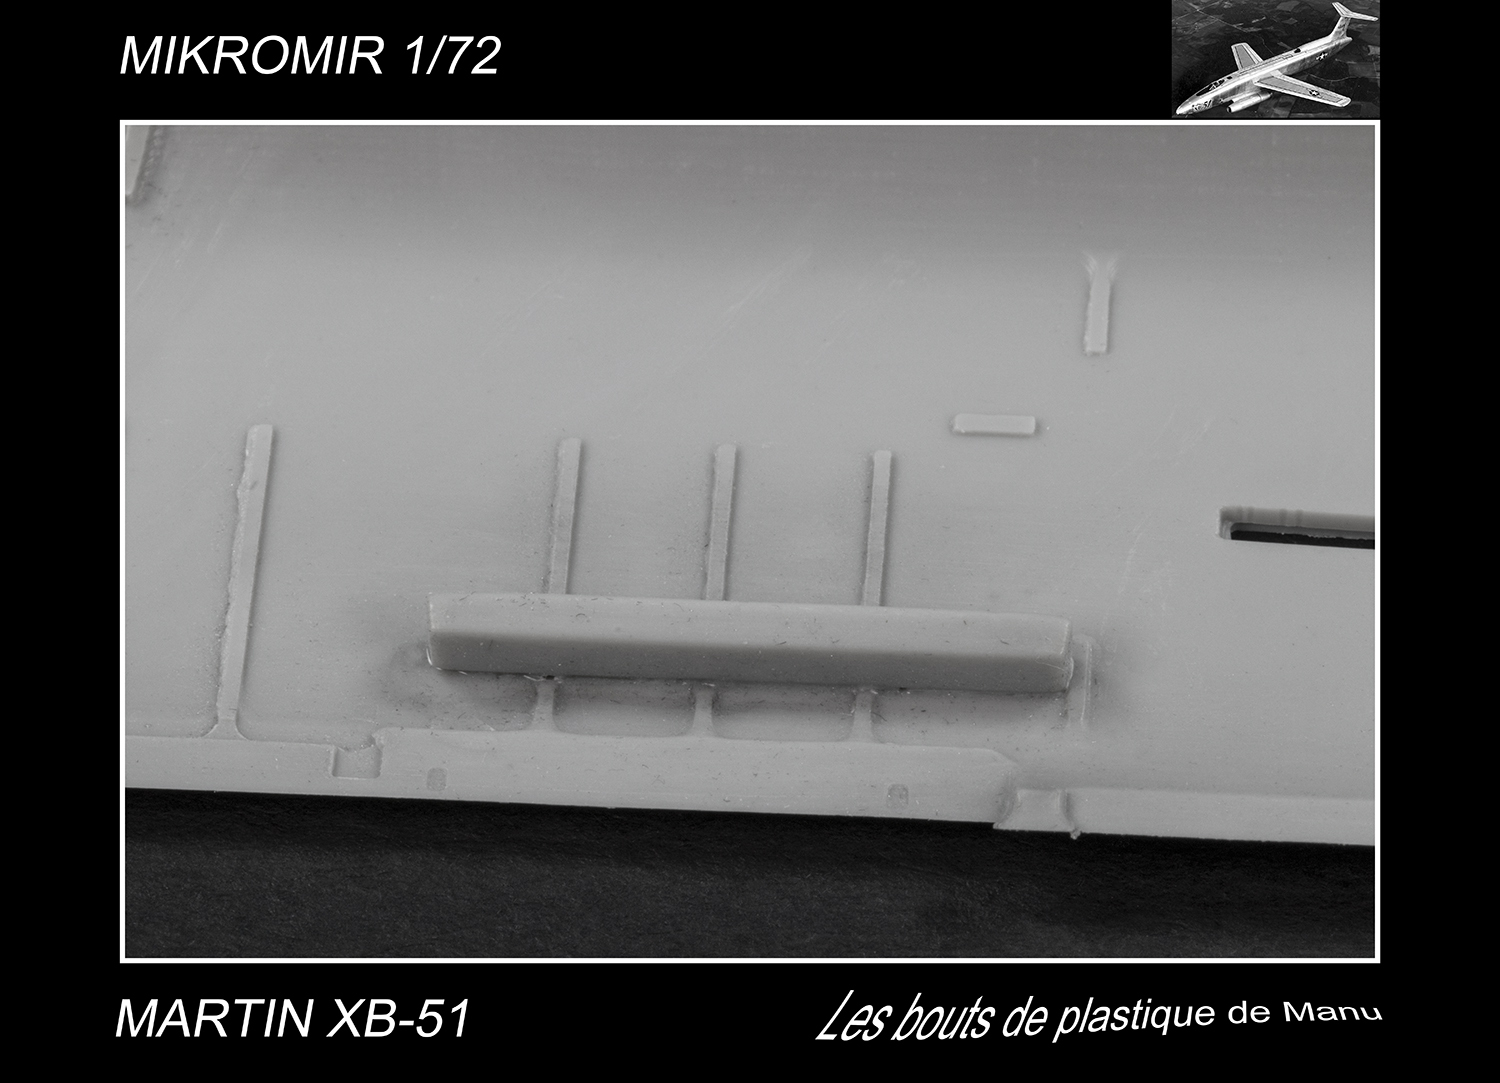 [Mikromir] Martin XB-51 - Les moteurs F85c